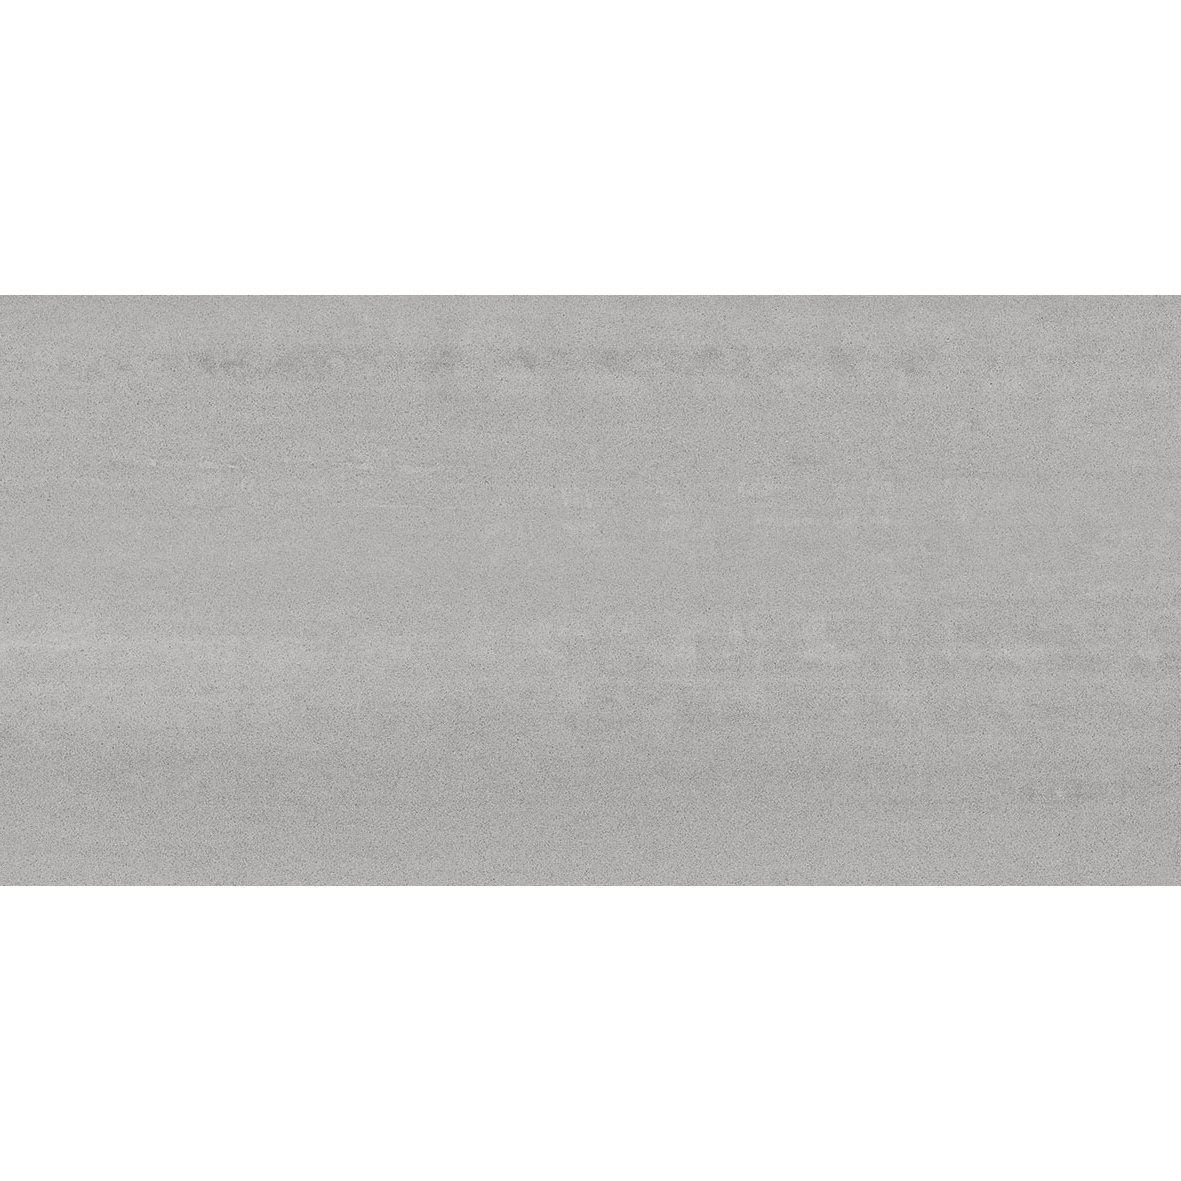 Плитка Kerama marazzi Про Дабл серый обрезной DD201100R 30х60 см плитка керамическая kerama marazzi коллекция маритимос 30х60 mp000018439